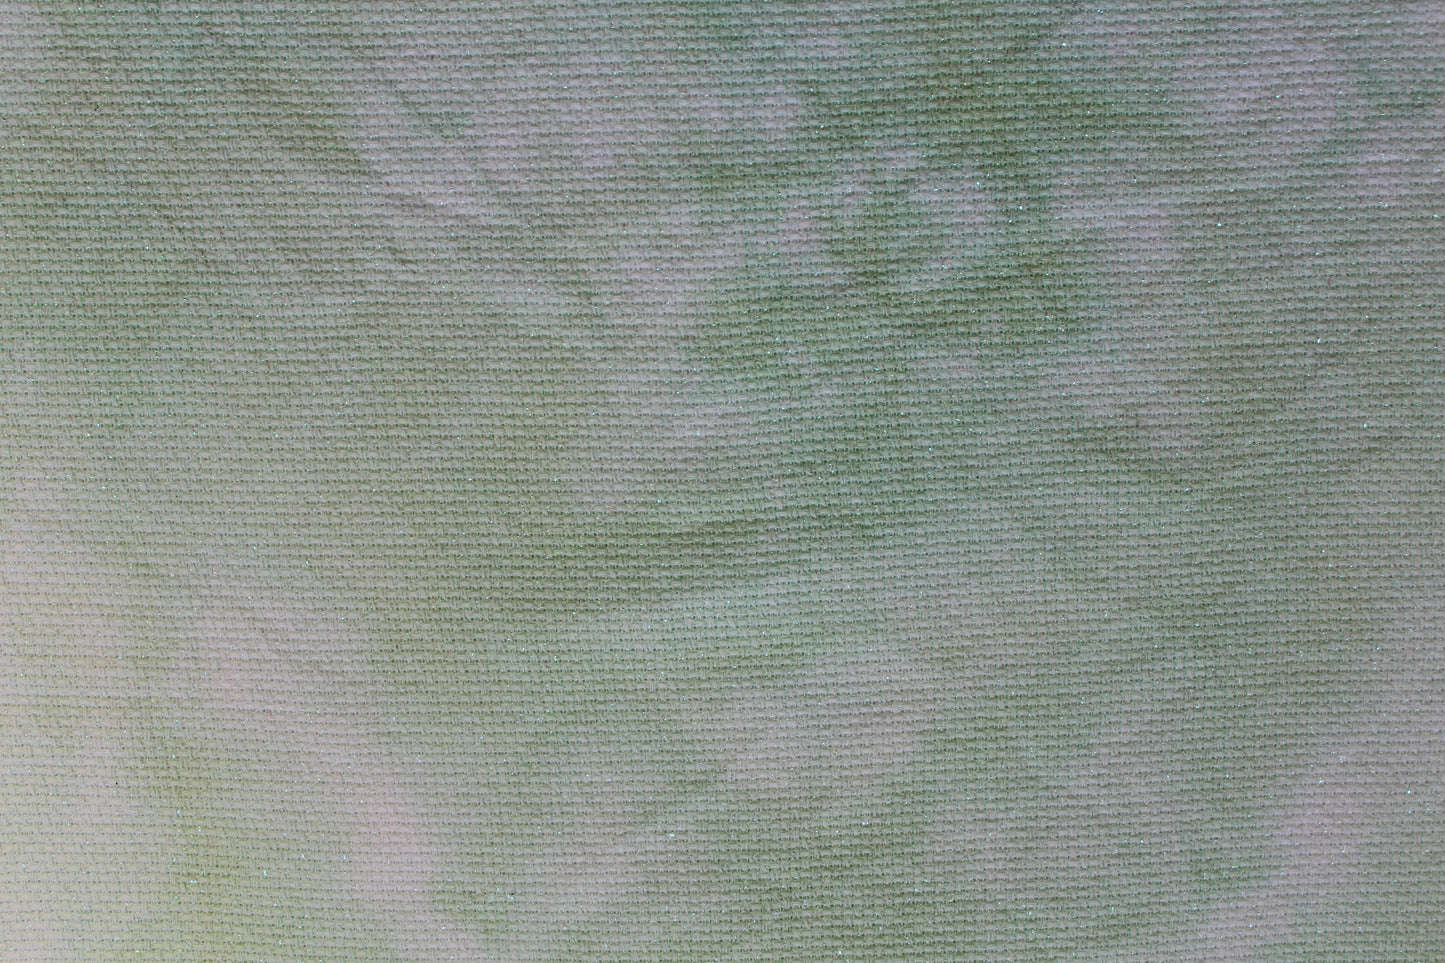 Mint Crisp fabric